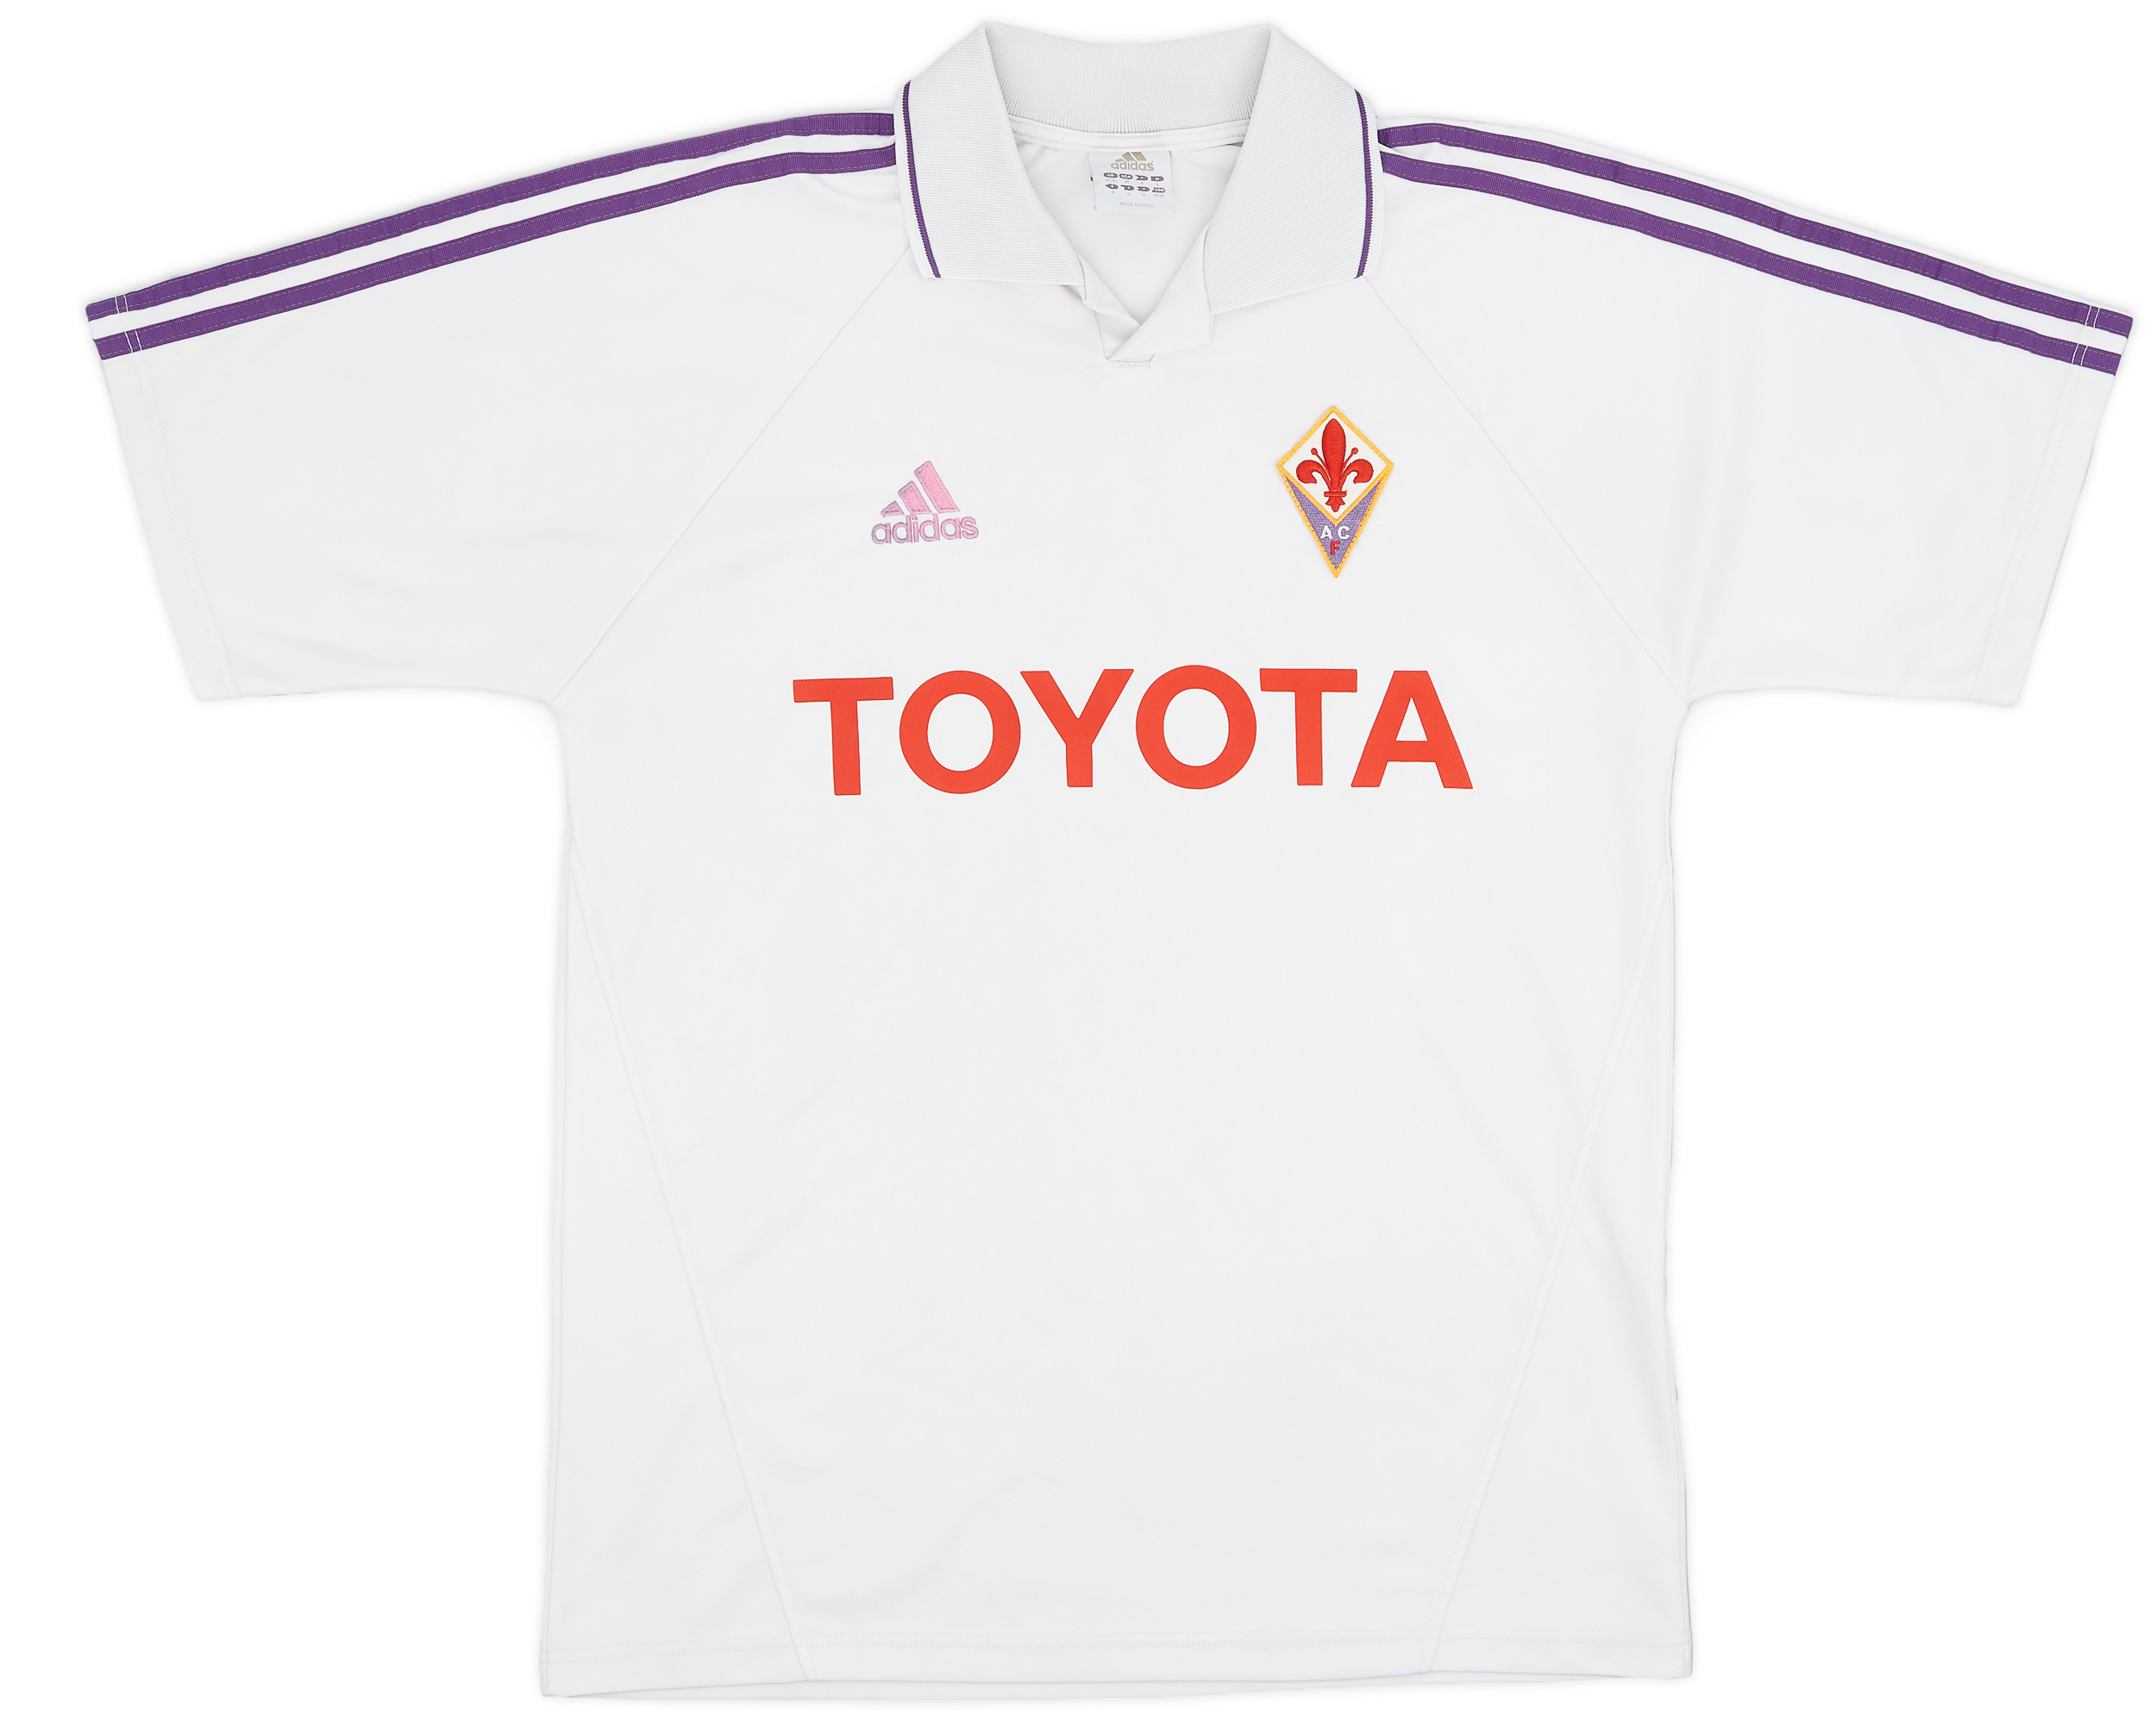 2004-05 Fiorentina Away Shirt - 6/10 - (/)